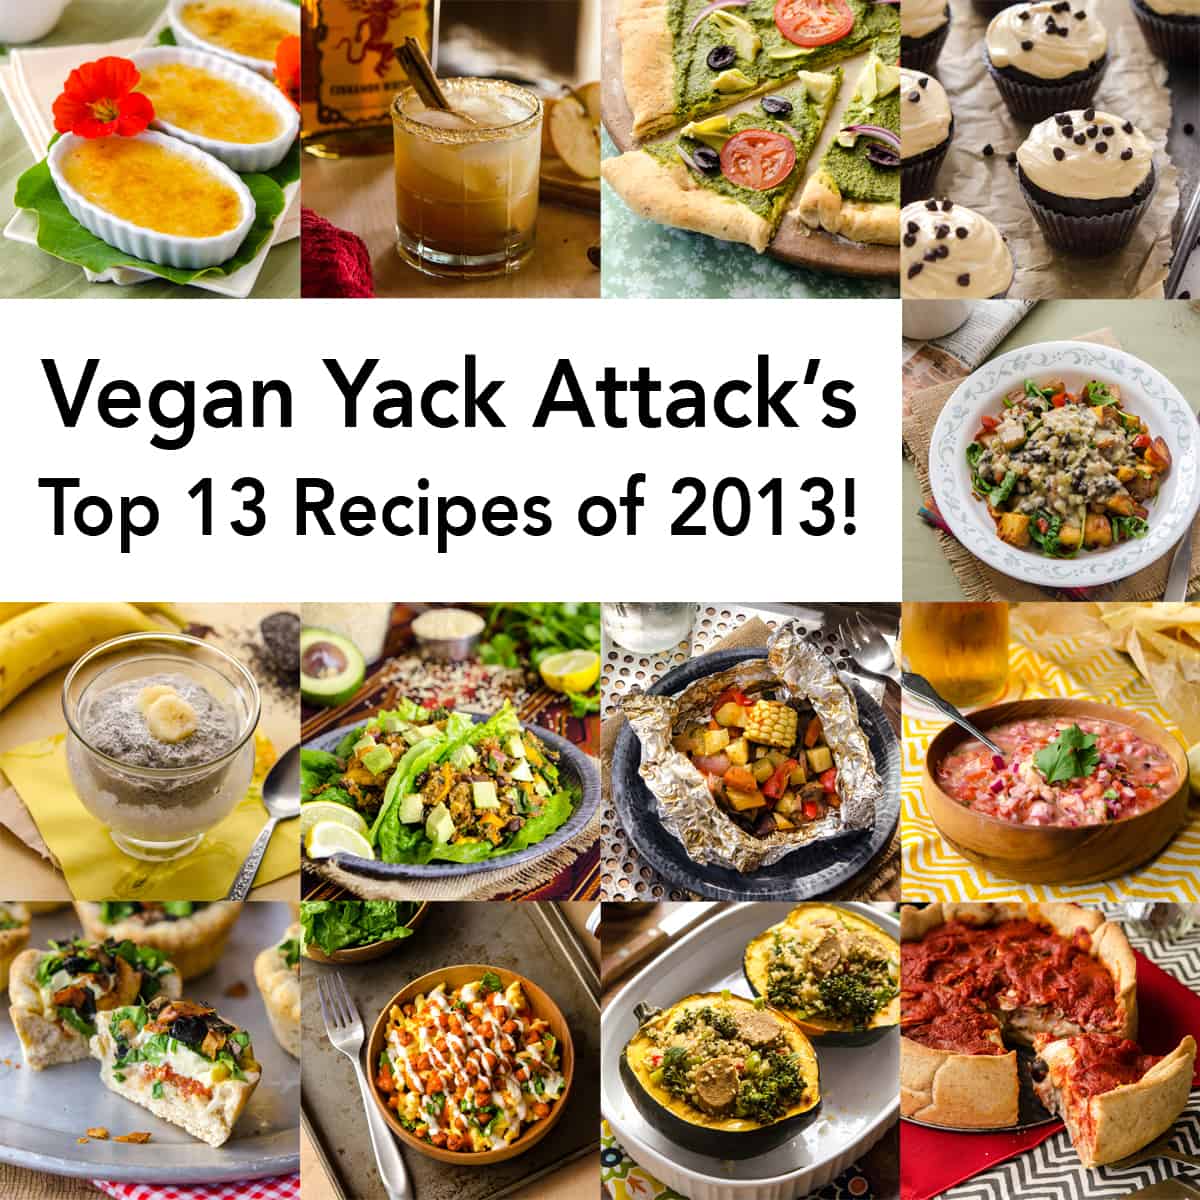 Top 13 Recipes of 2013!